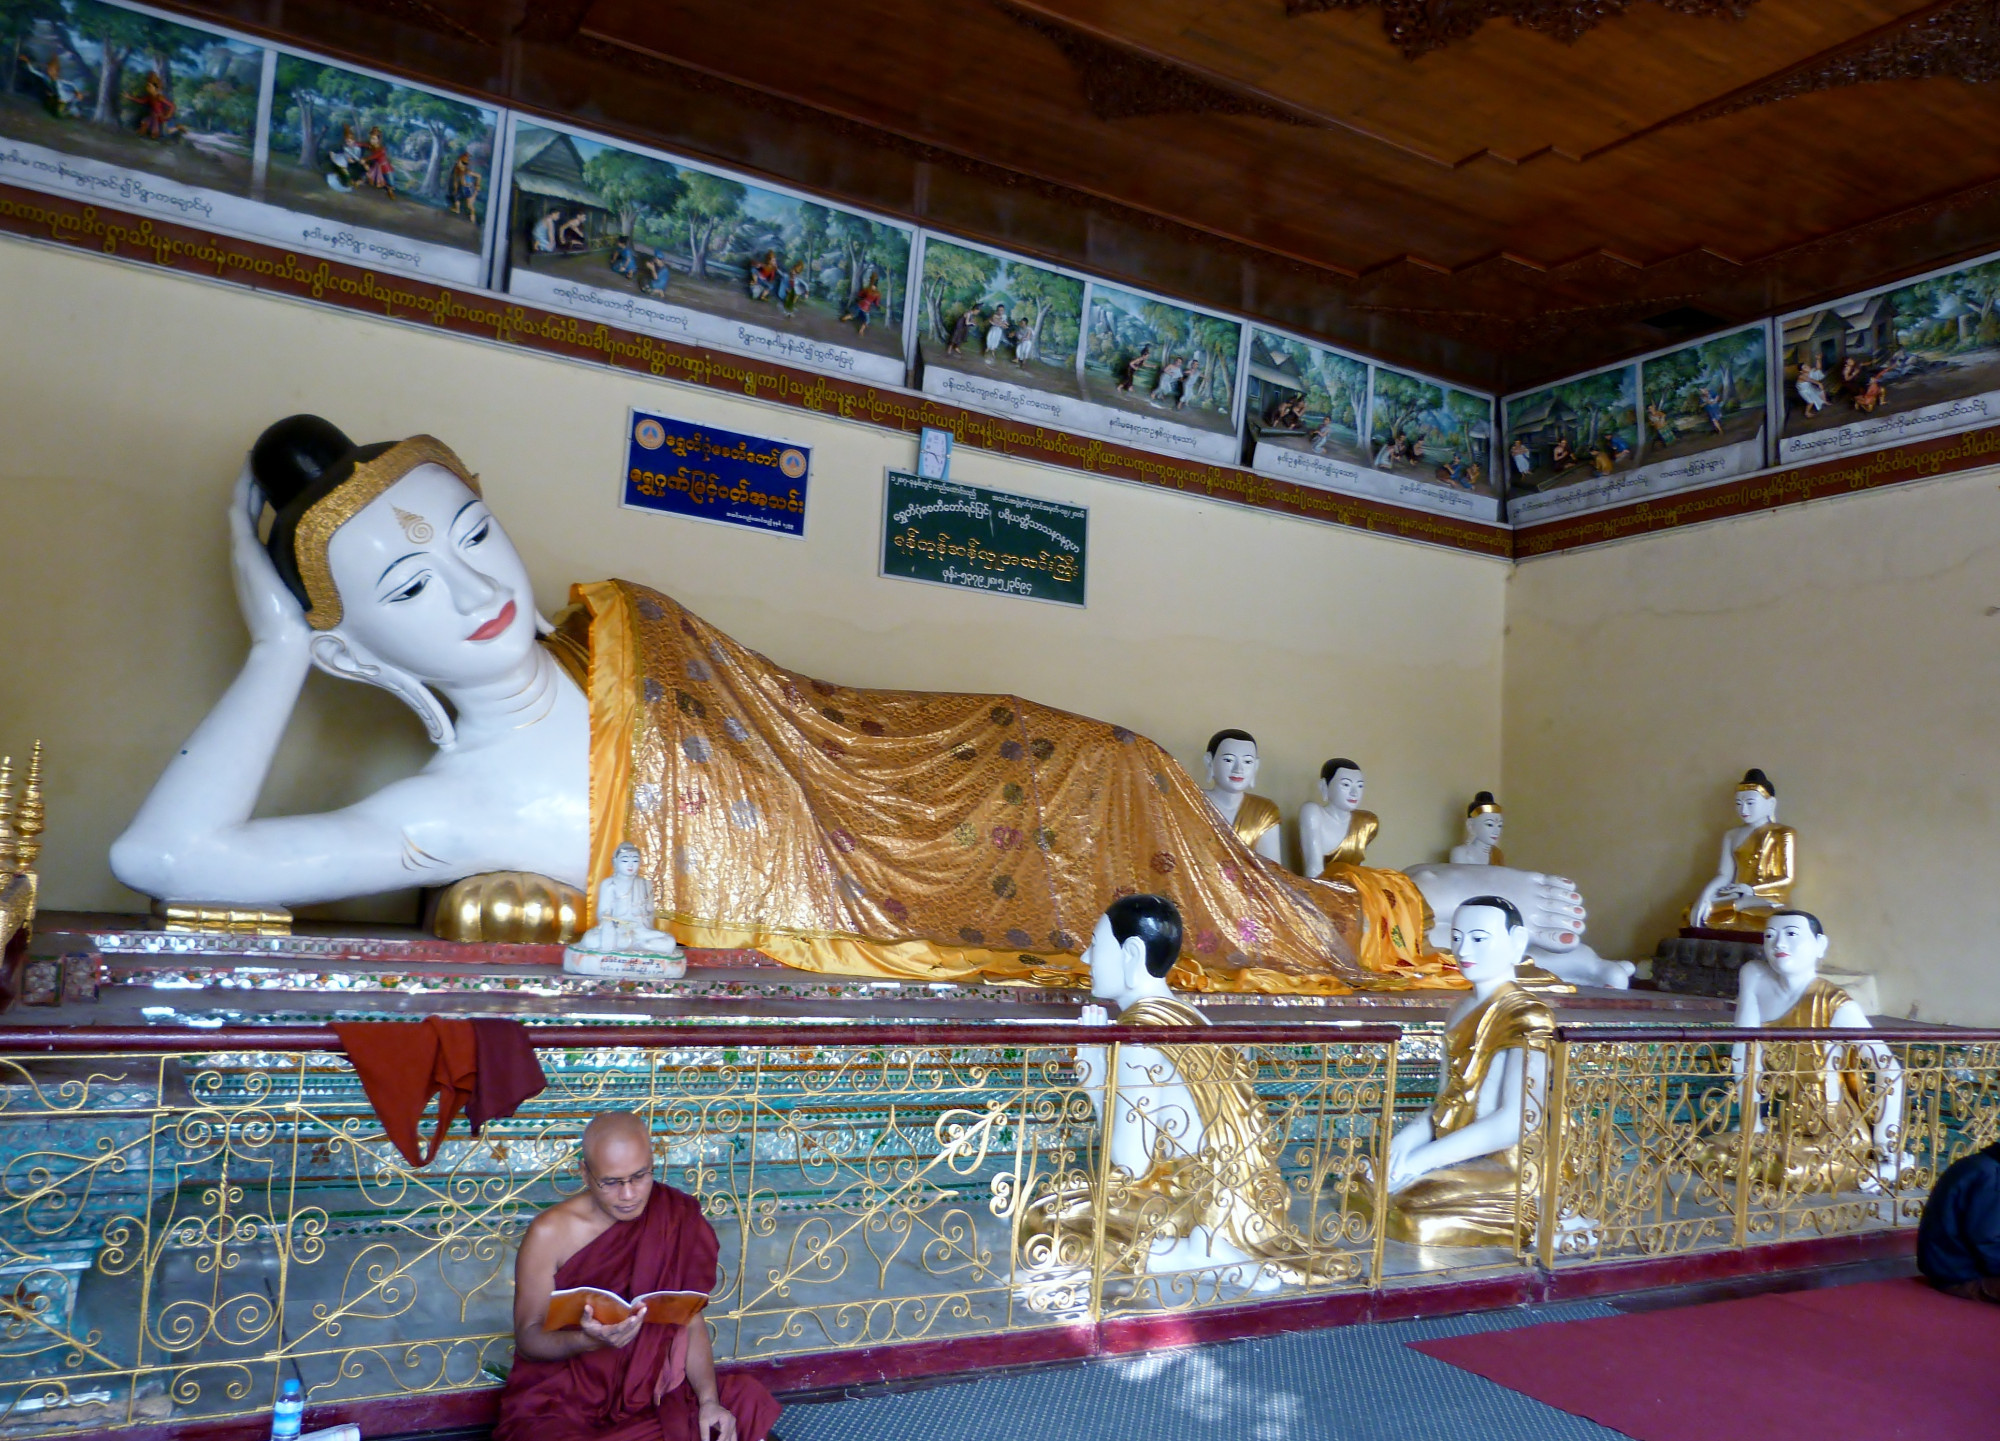 Пагода Шведагон, Мьянма (Бирма)